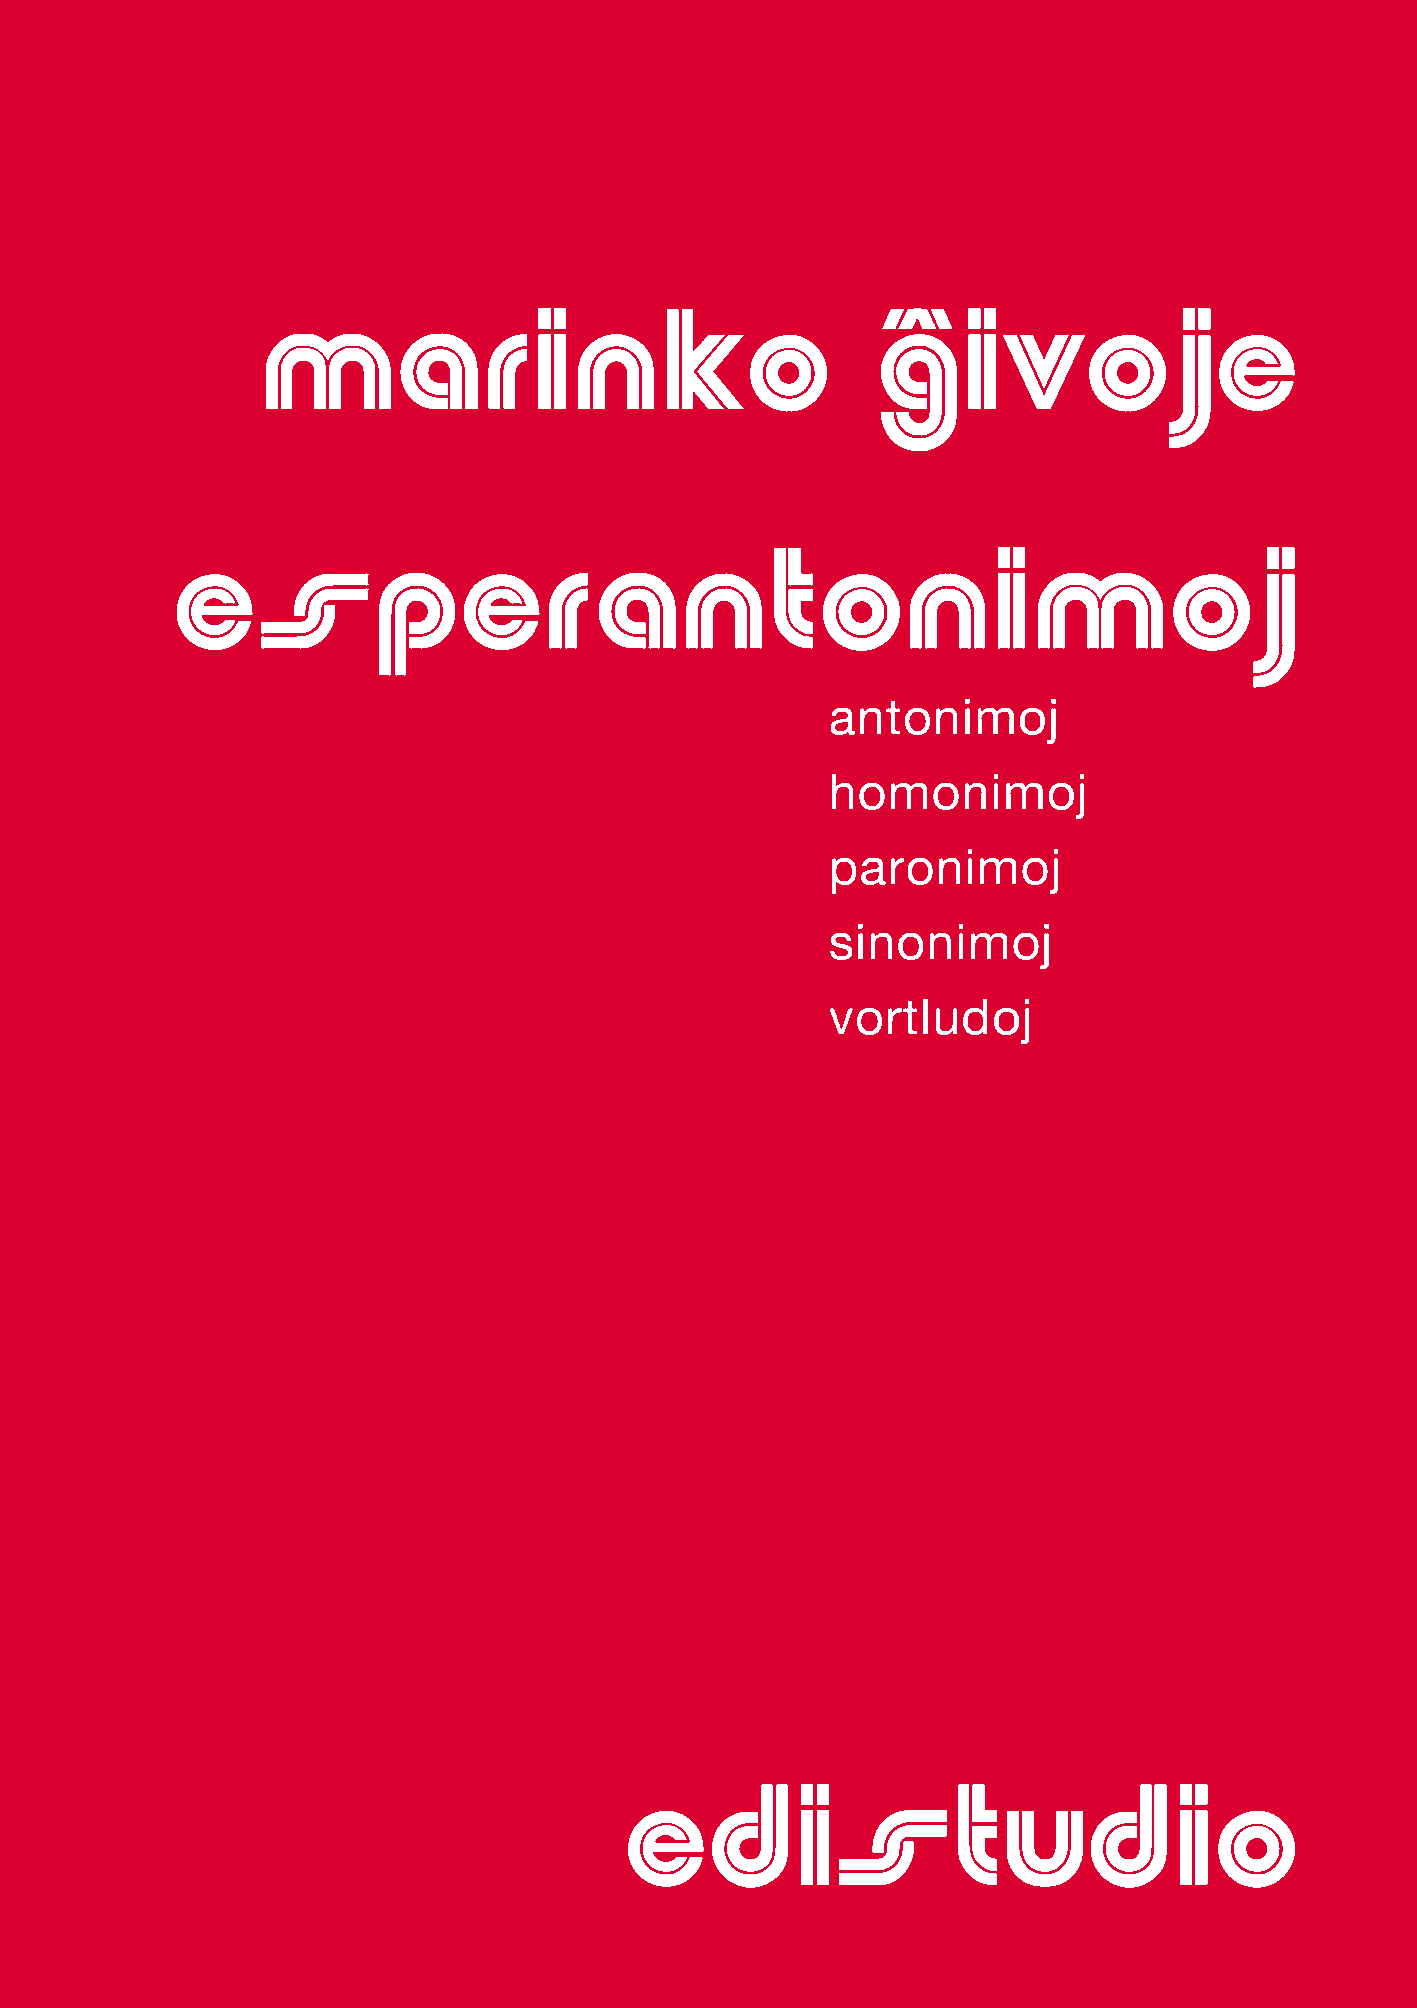 Esperantonimoj